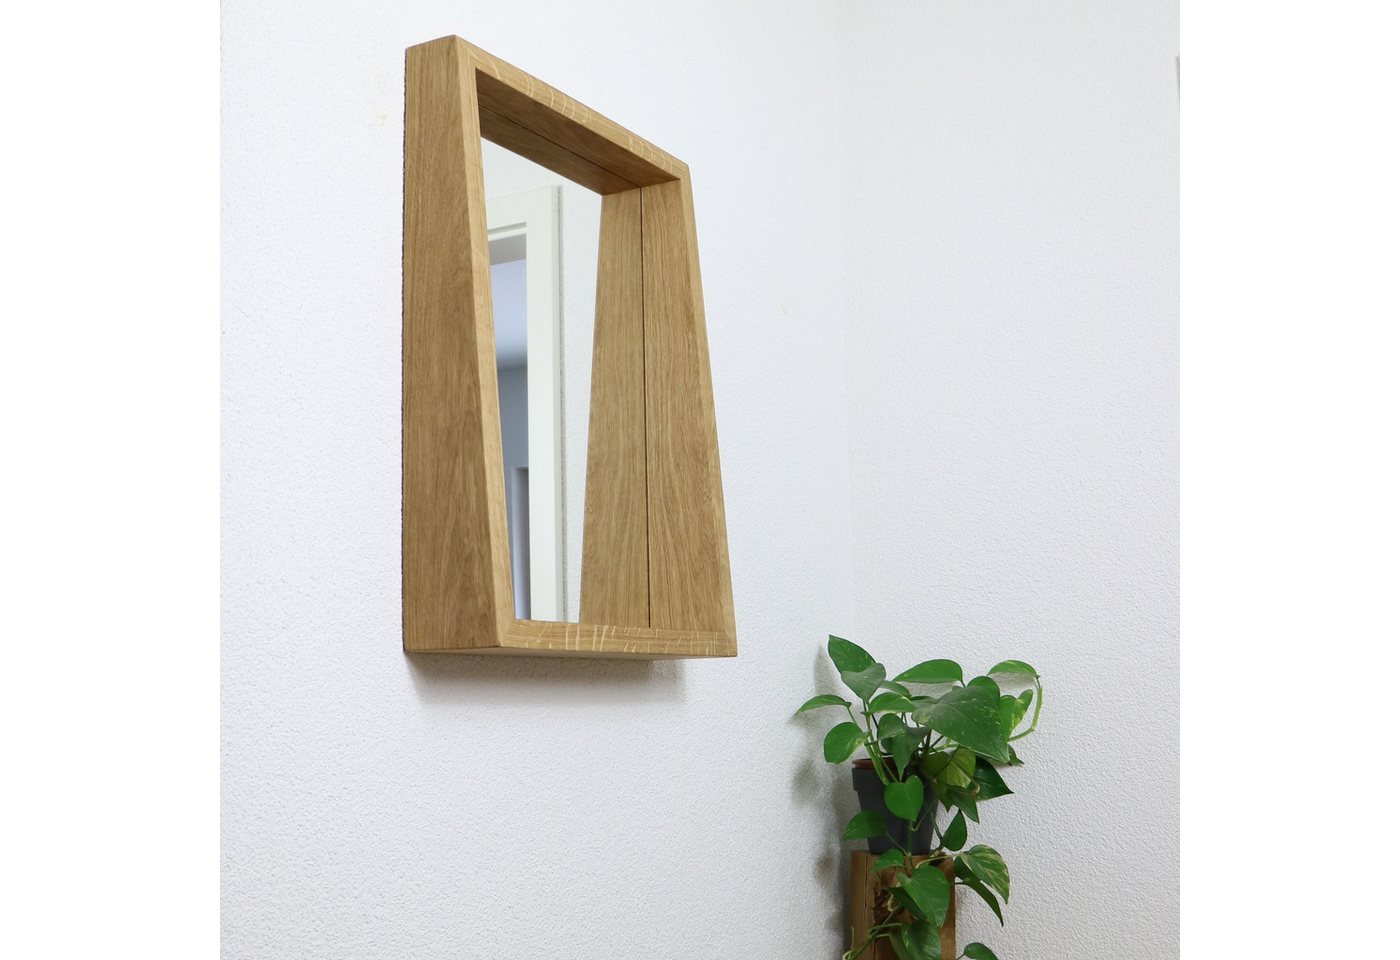 Woodkopf Badspiegel Spiegelrahmen ARTUS aus Eichenholz, Wandspiegel aus Eichenholz von Woodkopf